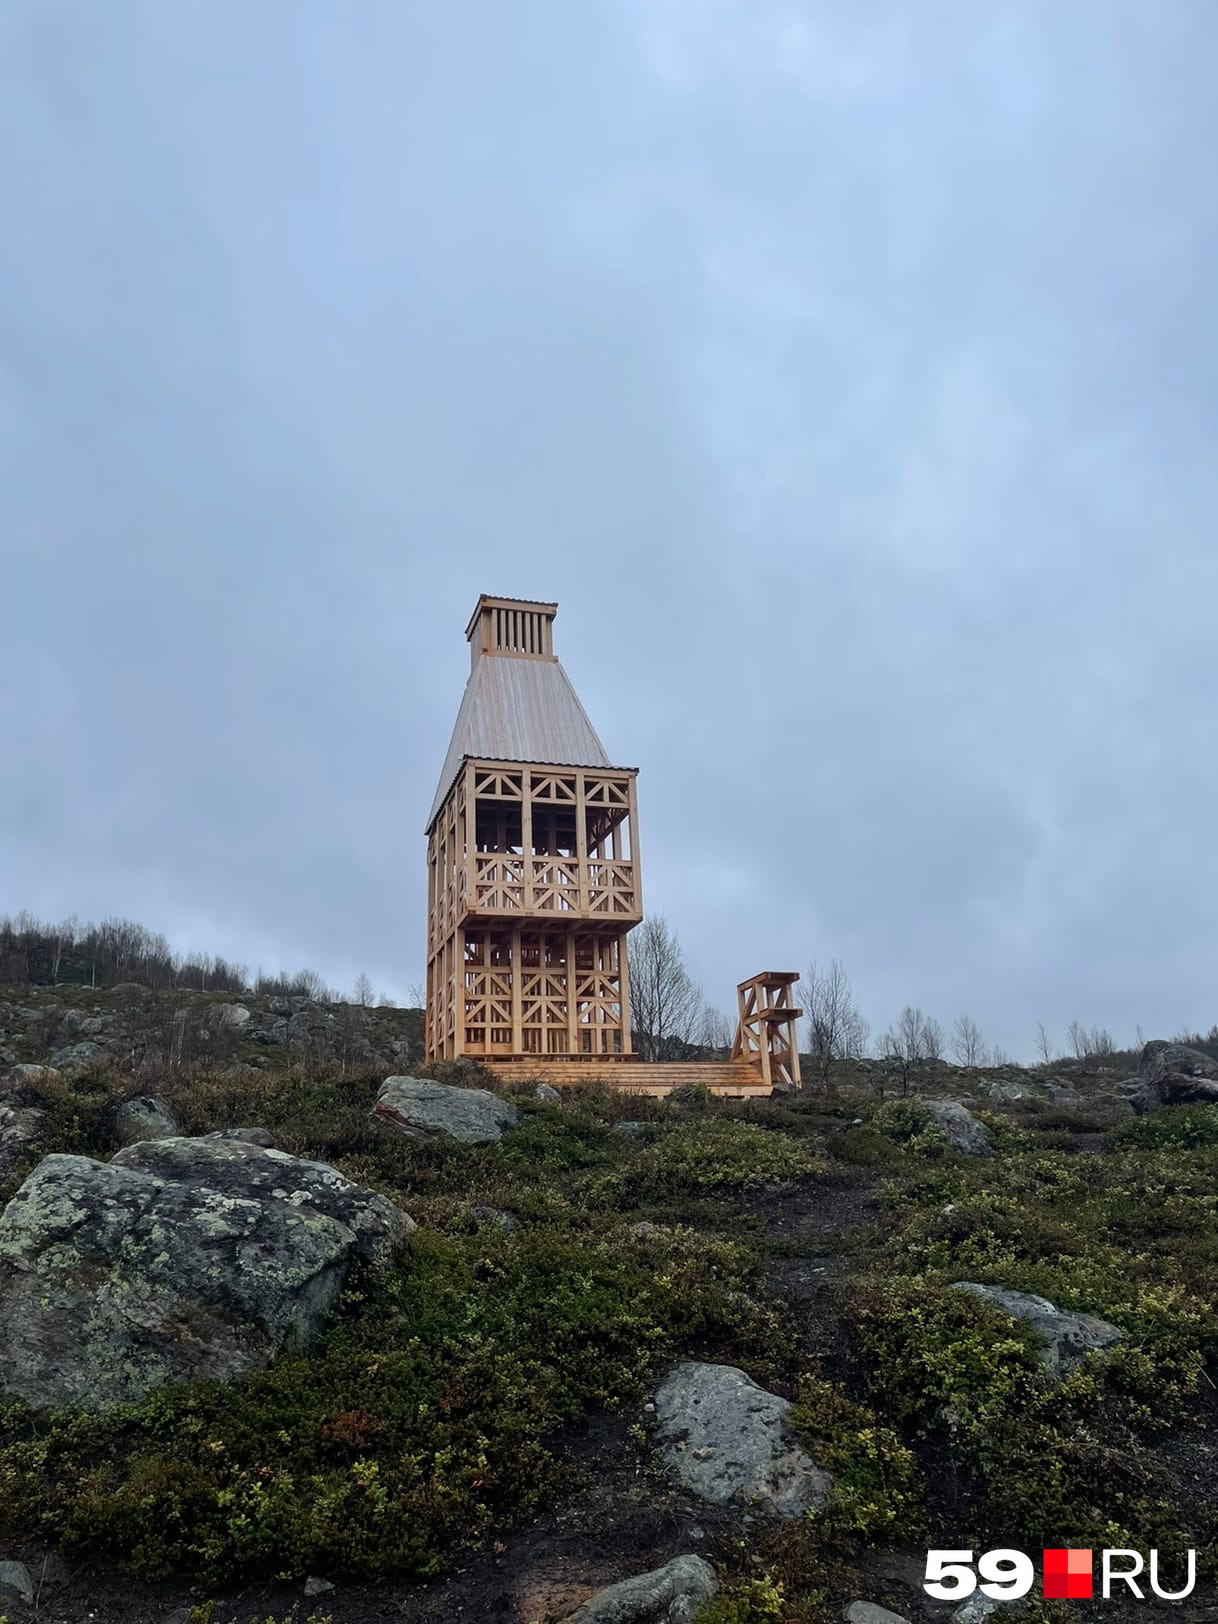 Арт-объект Маяк на горе Горелой в Мурманске — к нему можно сходить самостоятельно